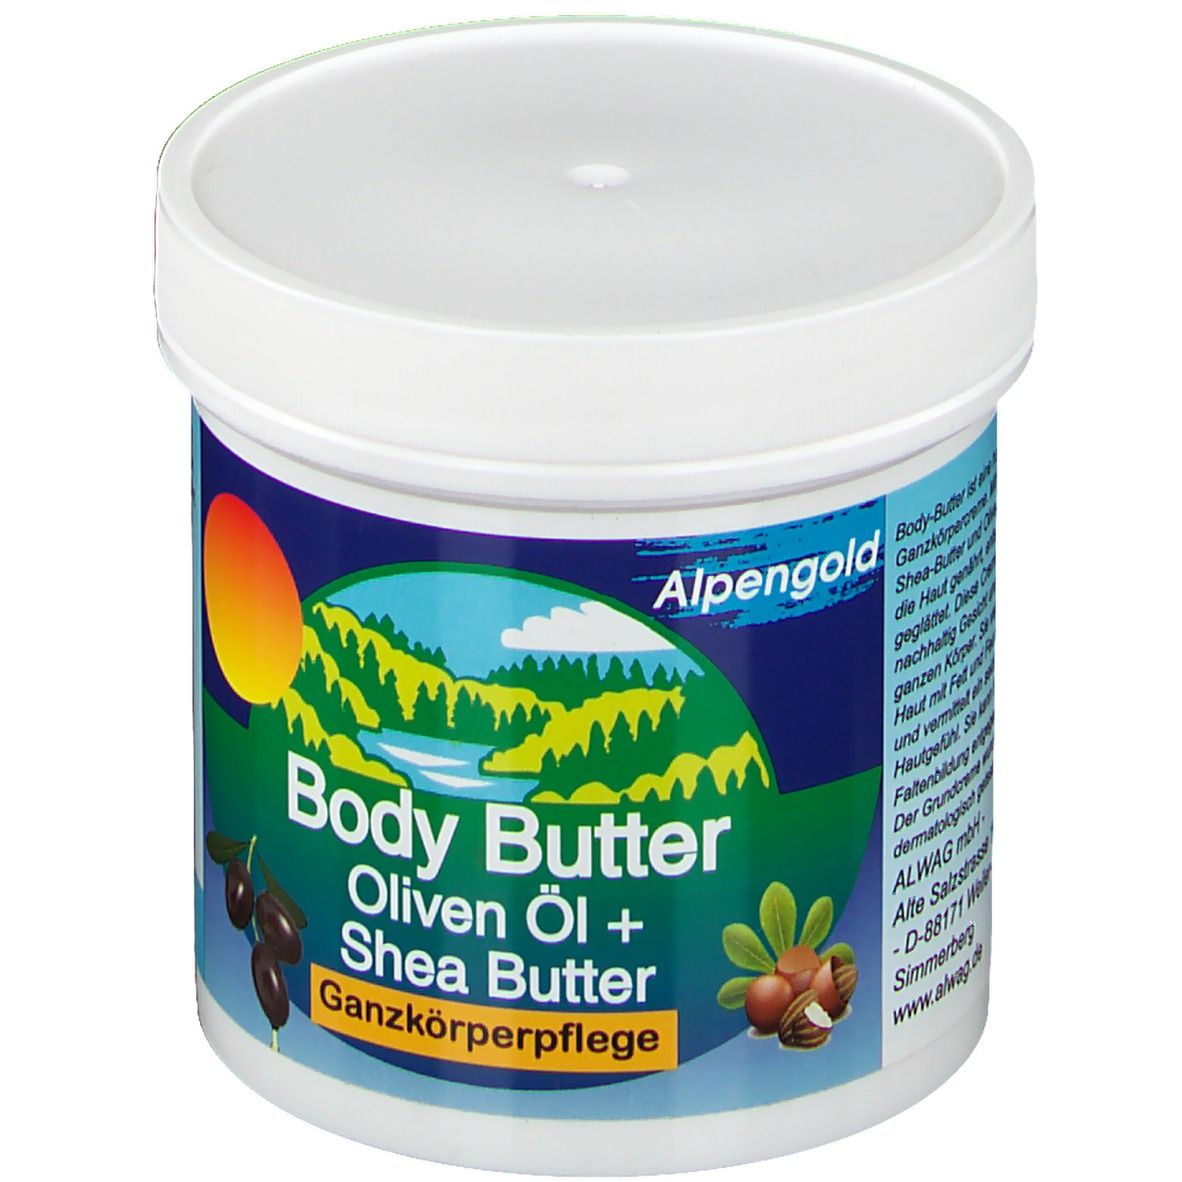 Body Butter Oliven-Öl & Shea-Butter Ganzkörperpflege